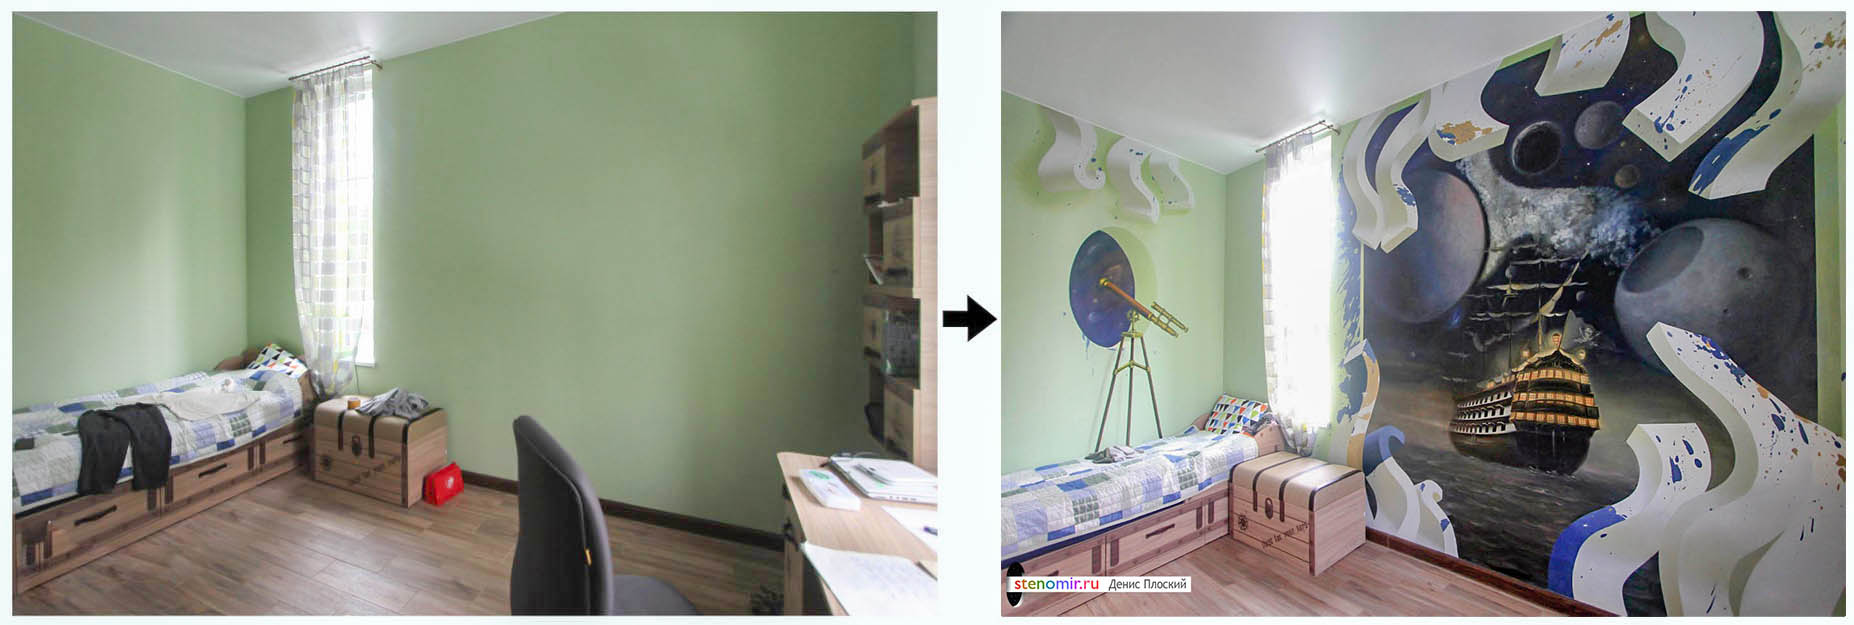 детская комната до и после оформления